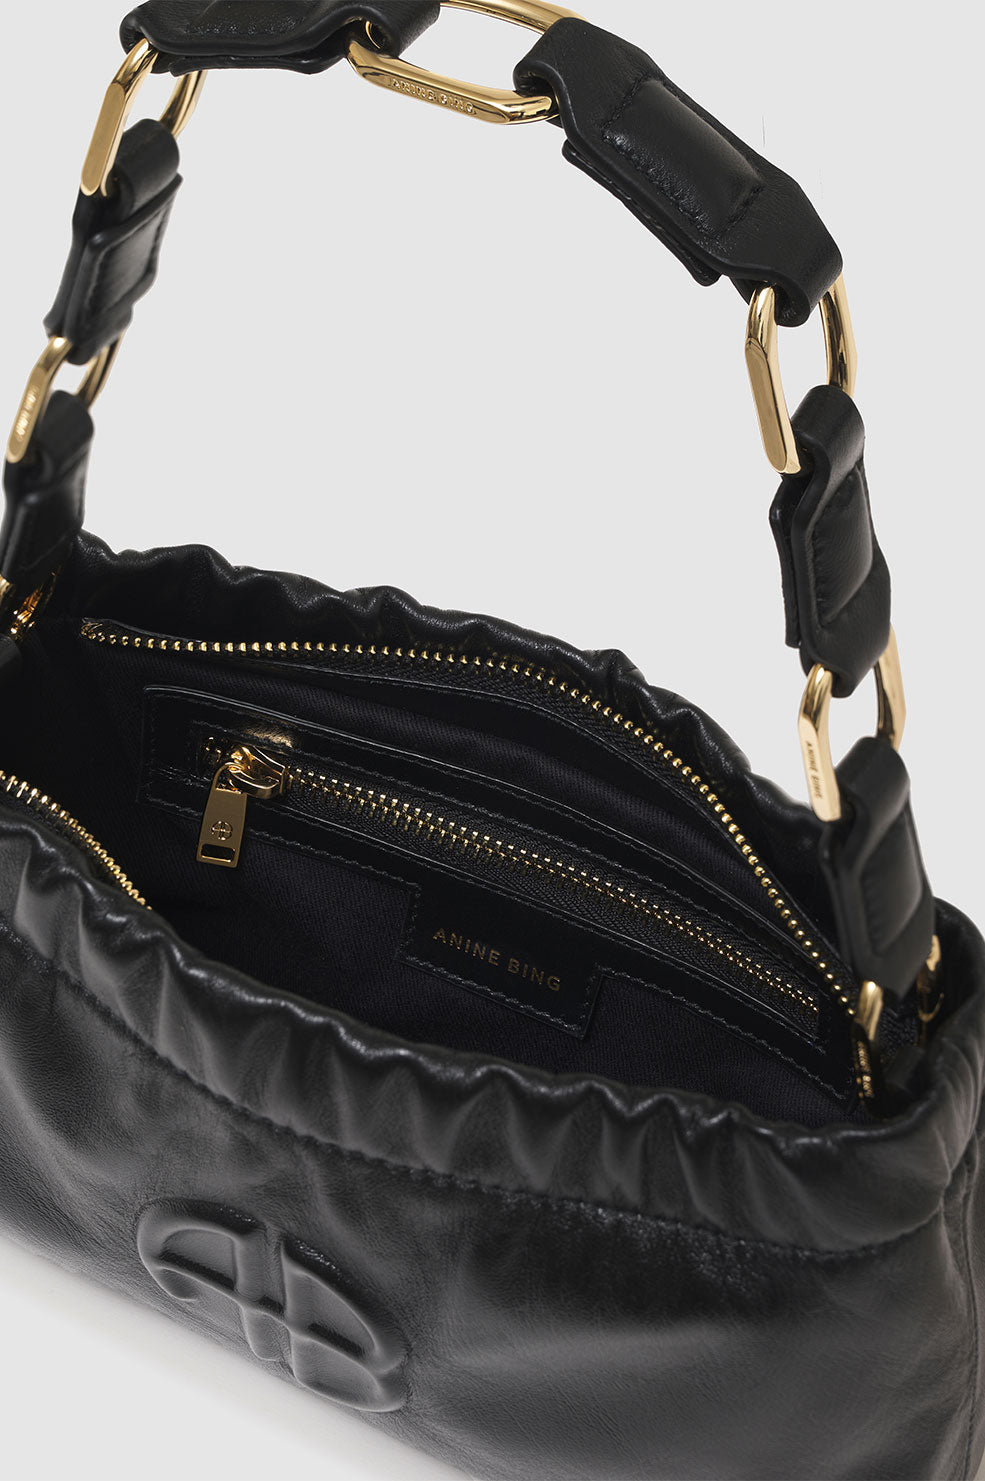 ANINE BING Small Kate Shoulder Bag - Black - Inside View